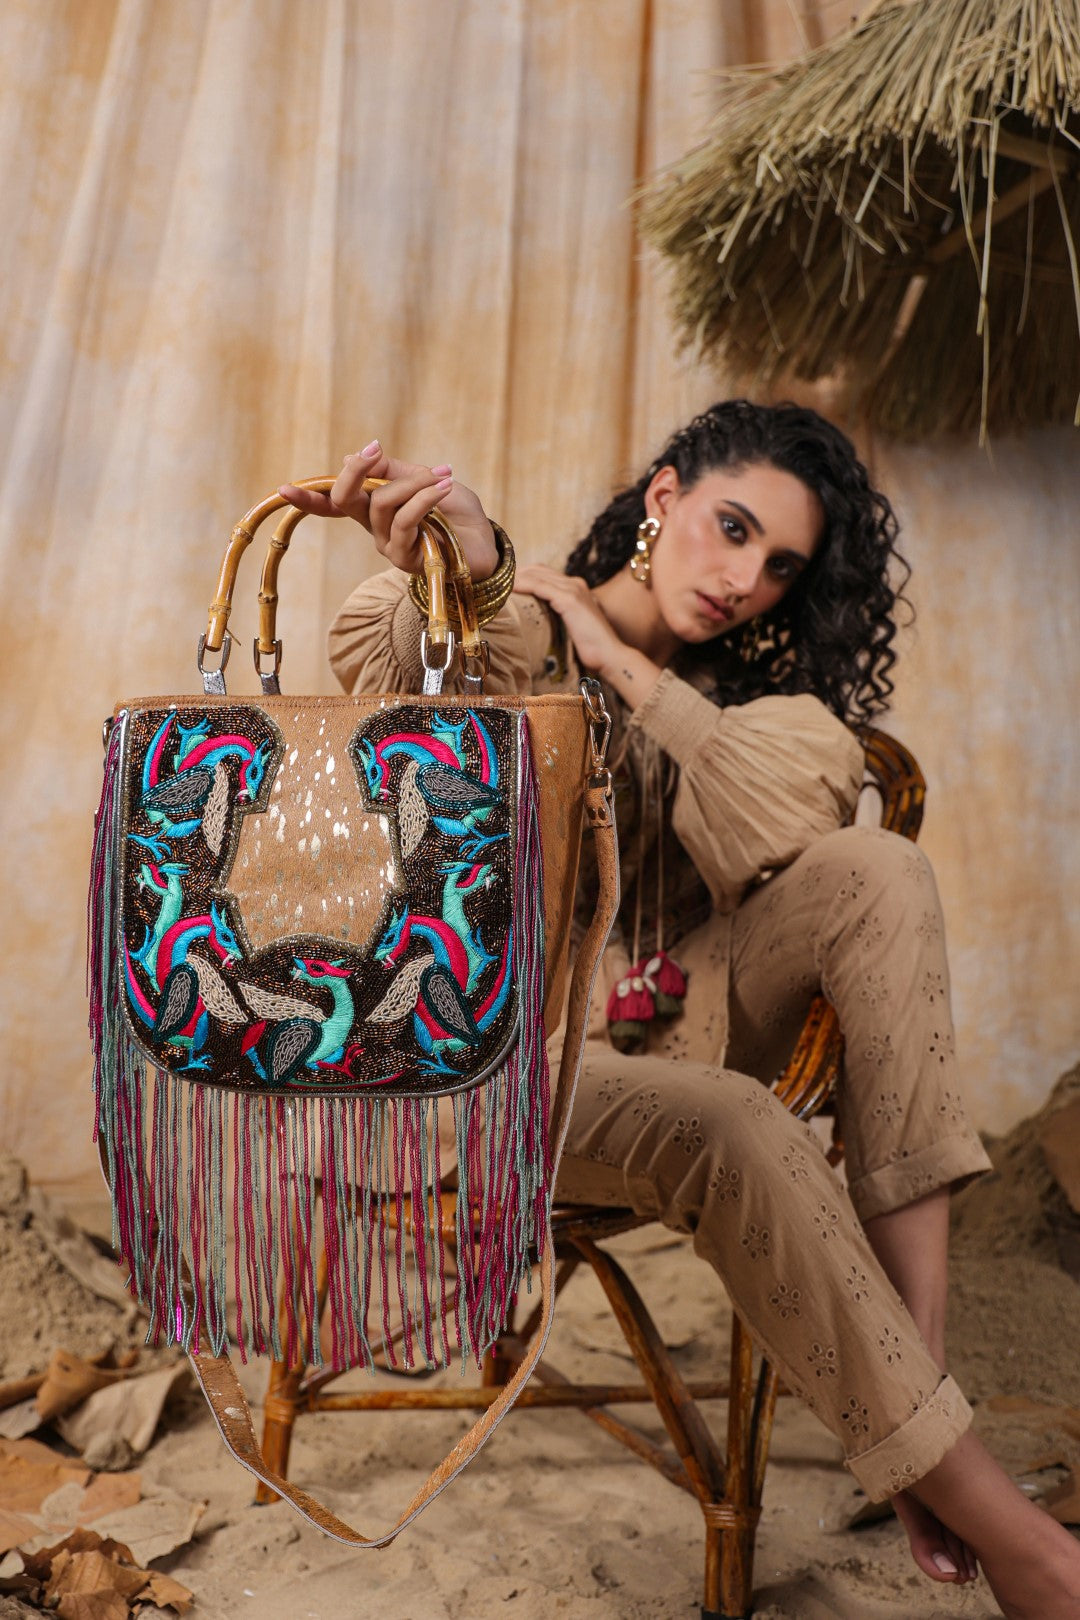 Women Handmade Leather Shoulder Bag With Decorative Fringes